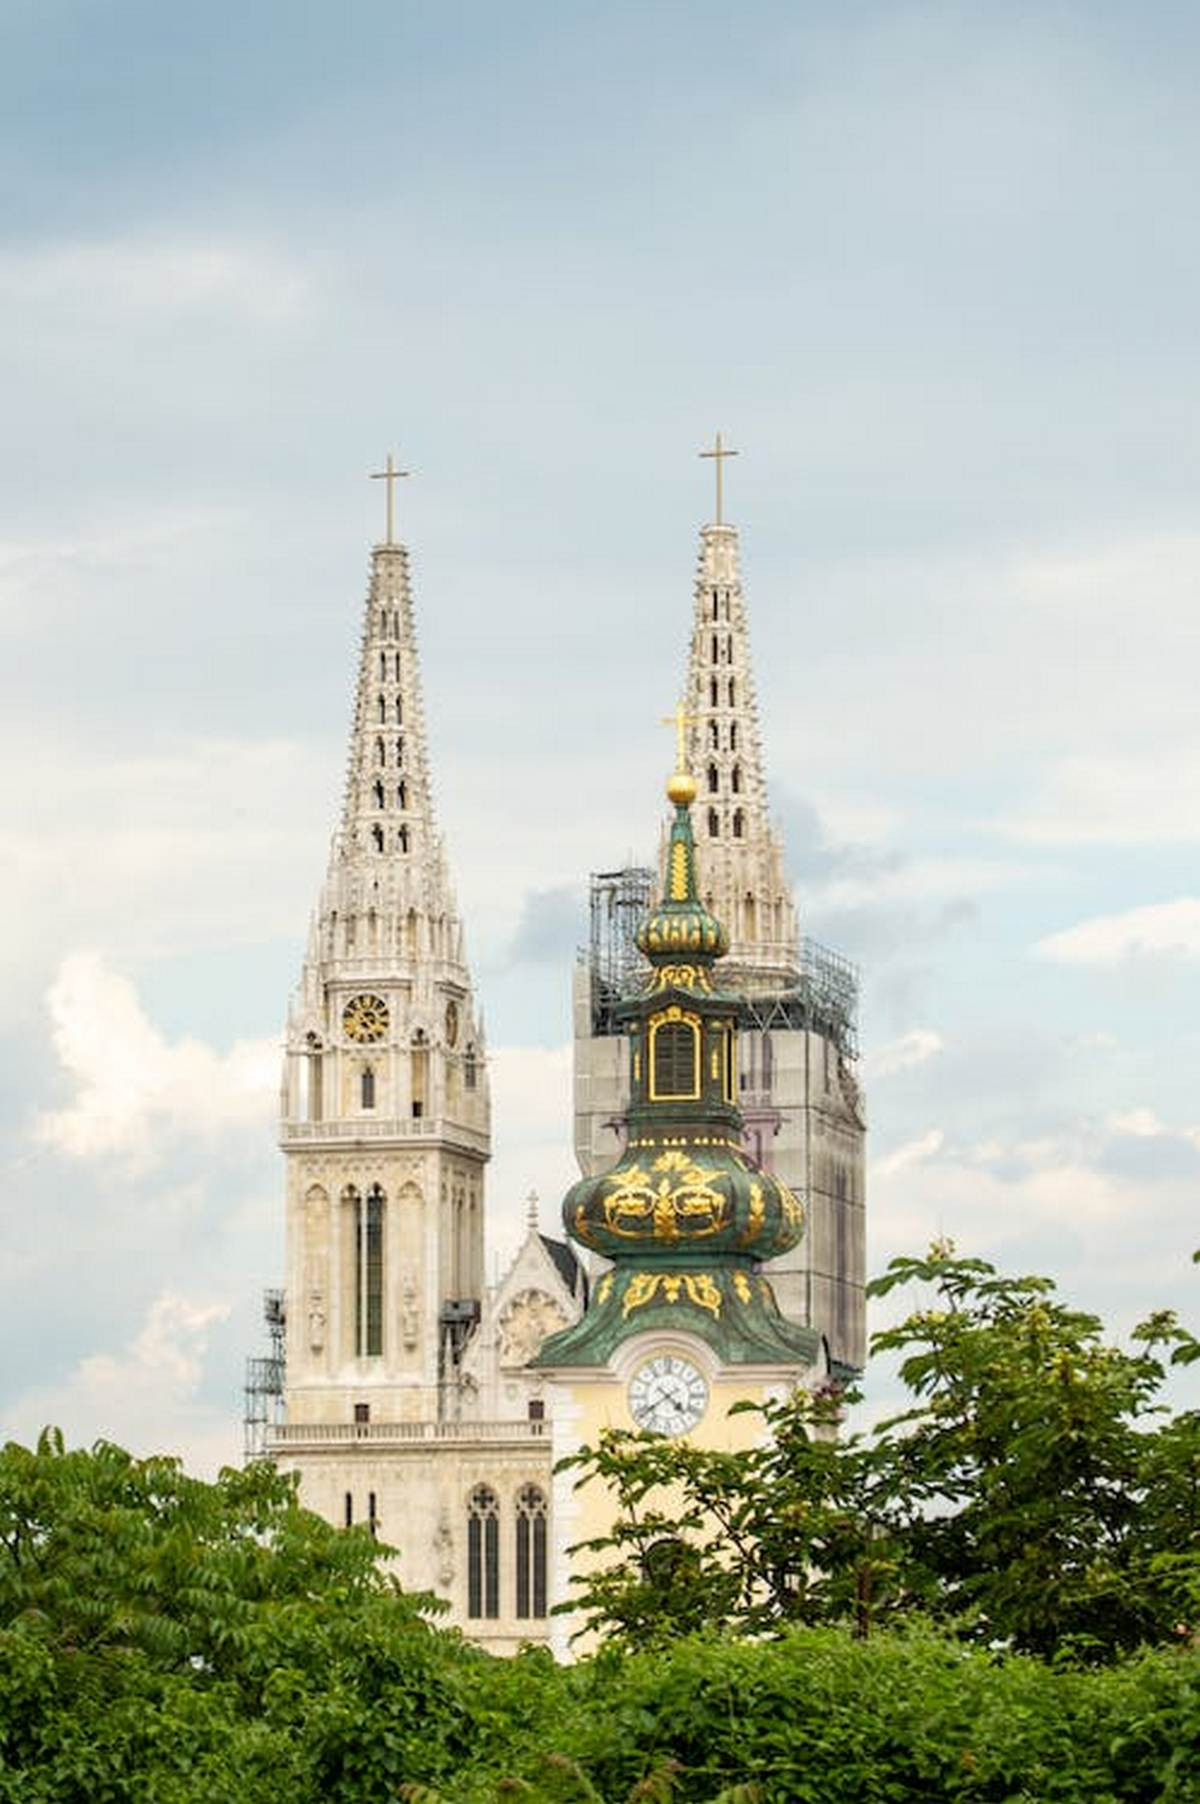 Katedrala v Zagrebu